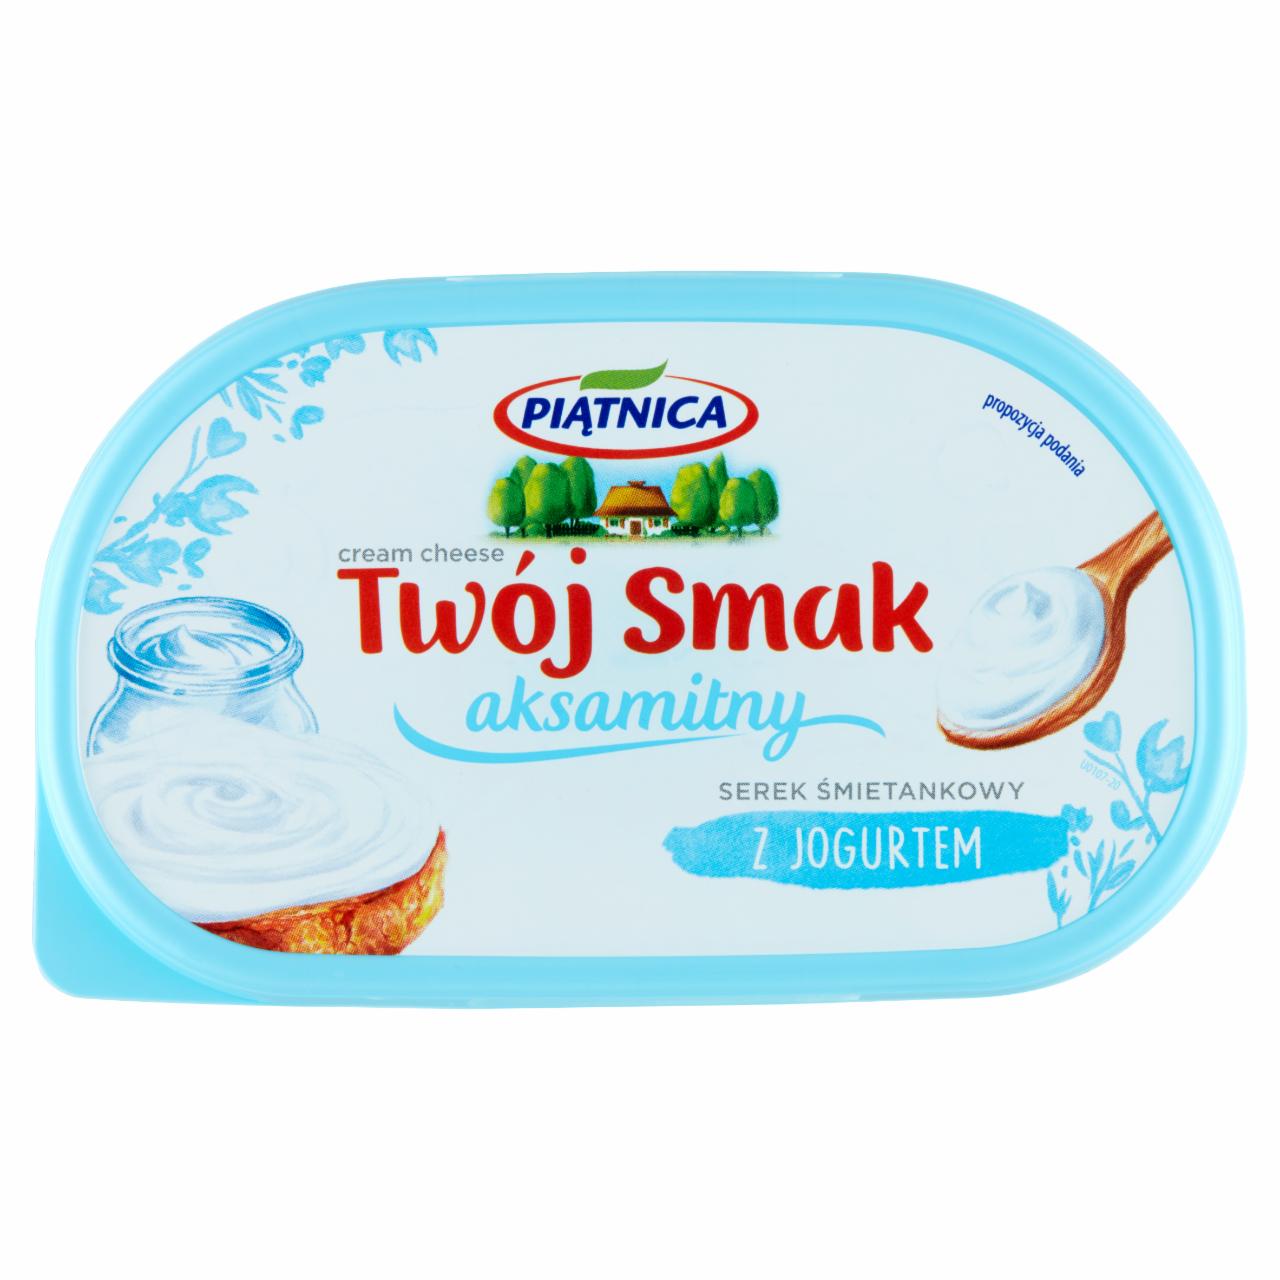 Zdjęcia - Piątnica Twój Smak Serek śmietankowy aksamitny z jogurtem 135 g